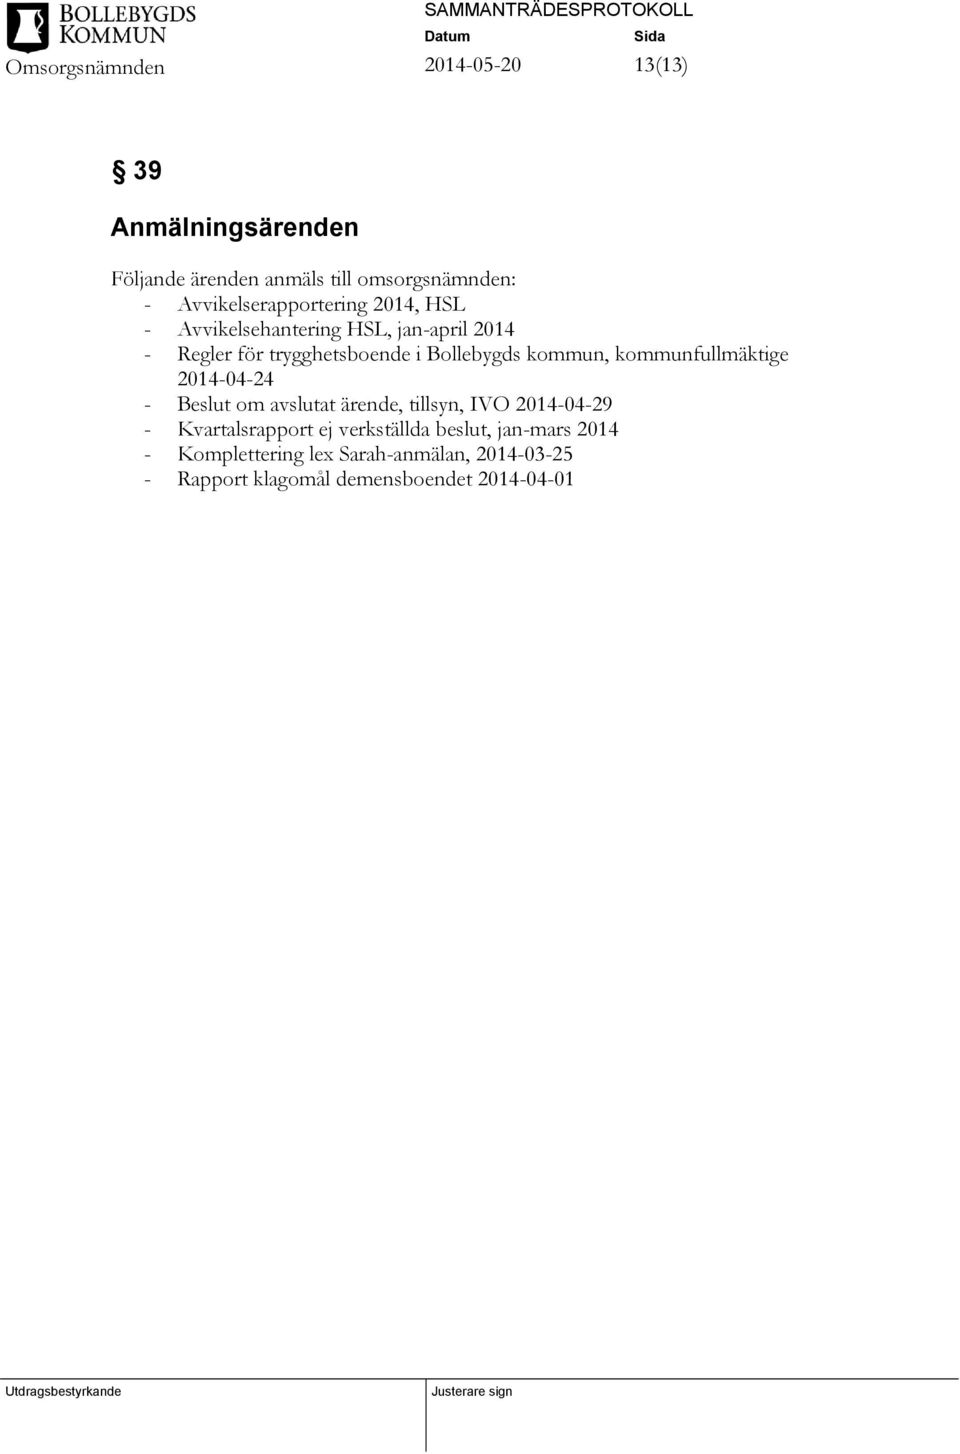 kommunfullmäktige 2014-04-24 - Beslut om avslutat ärende, tillsyn, IVO 2014-04-29 - Kvartalsrapport ej